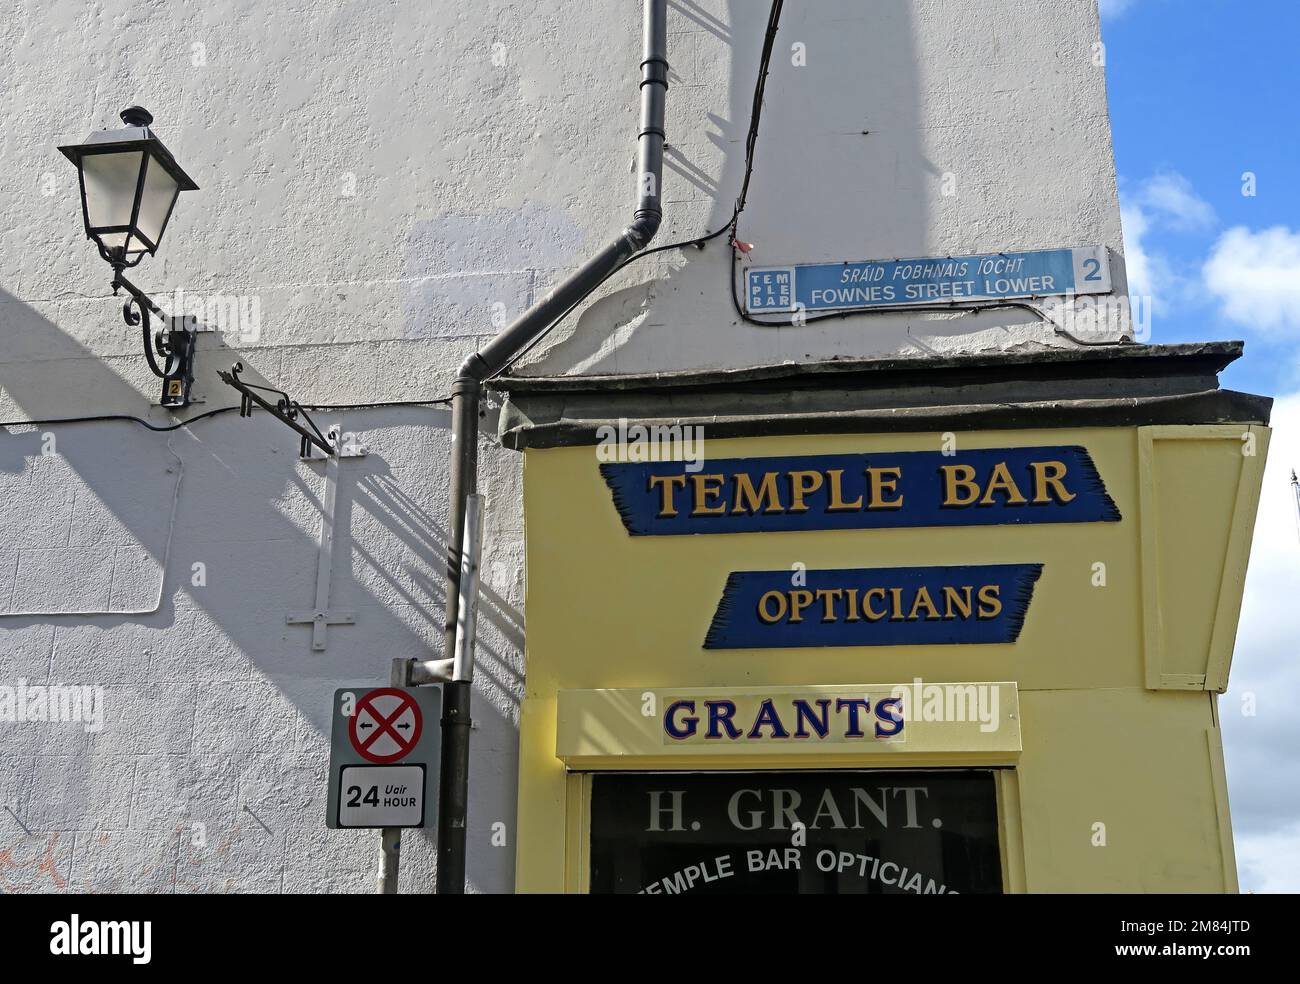 Temple Bar signs, Grants Optician, Fownes Street Lower, 41 Wellington Quay, Temple Bar, Dublin 2, D02 NN99, Eire, Ireland Stock Photo